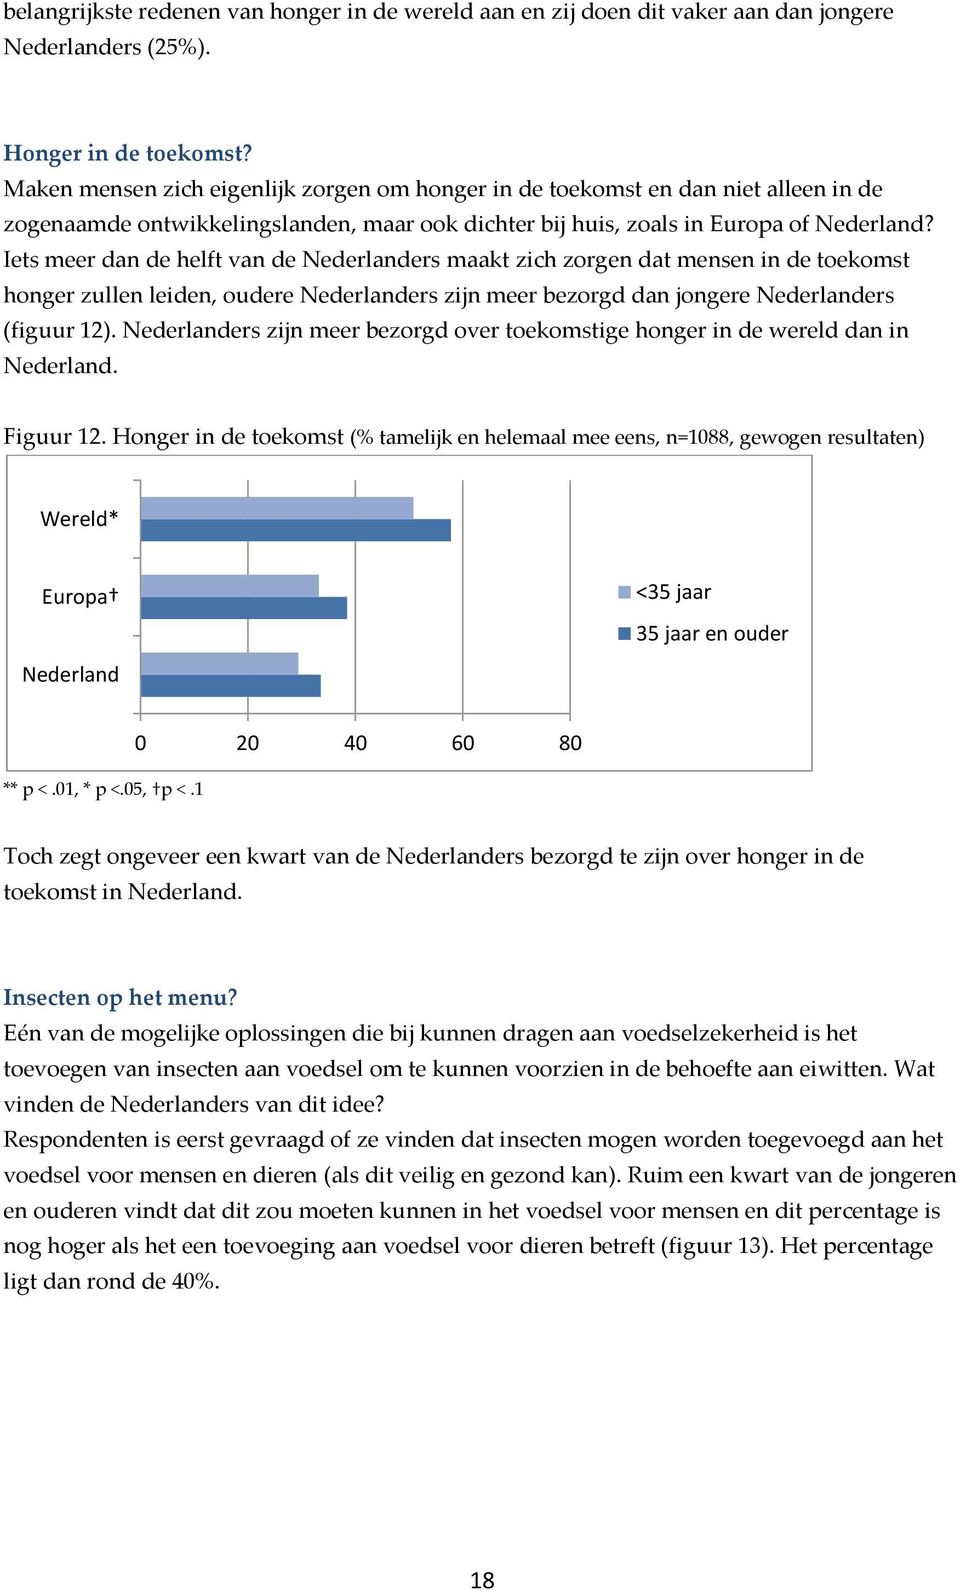 Iets meer dan de helft van de Nederlanders maakt zich zorgen dat mensen in de toekomst honger zullen leiden, oudere Nederlanders zijn meer bezorgd dan jongere Nederlanders (figuur 12).